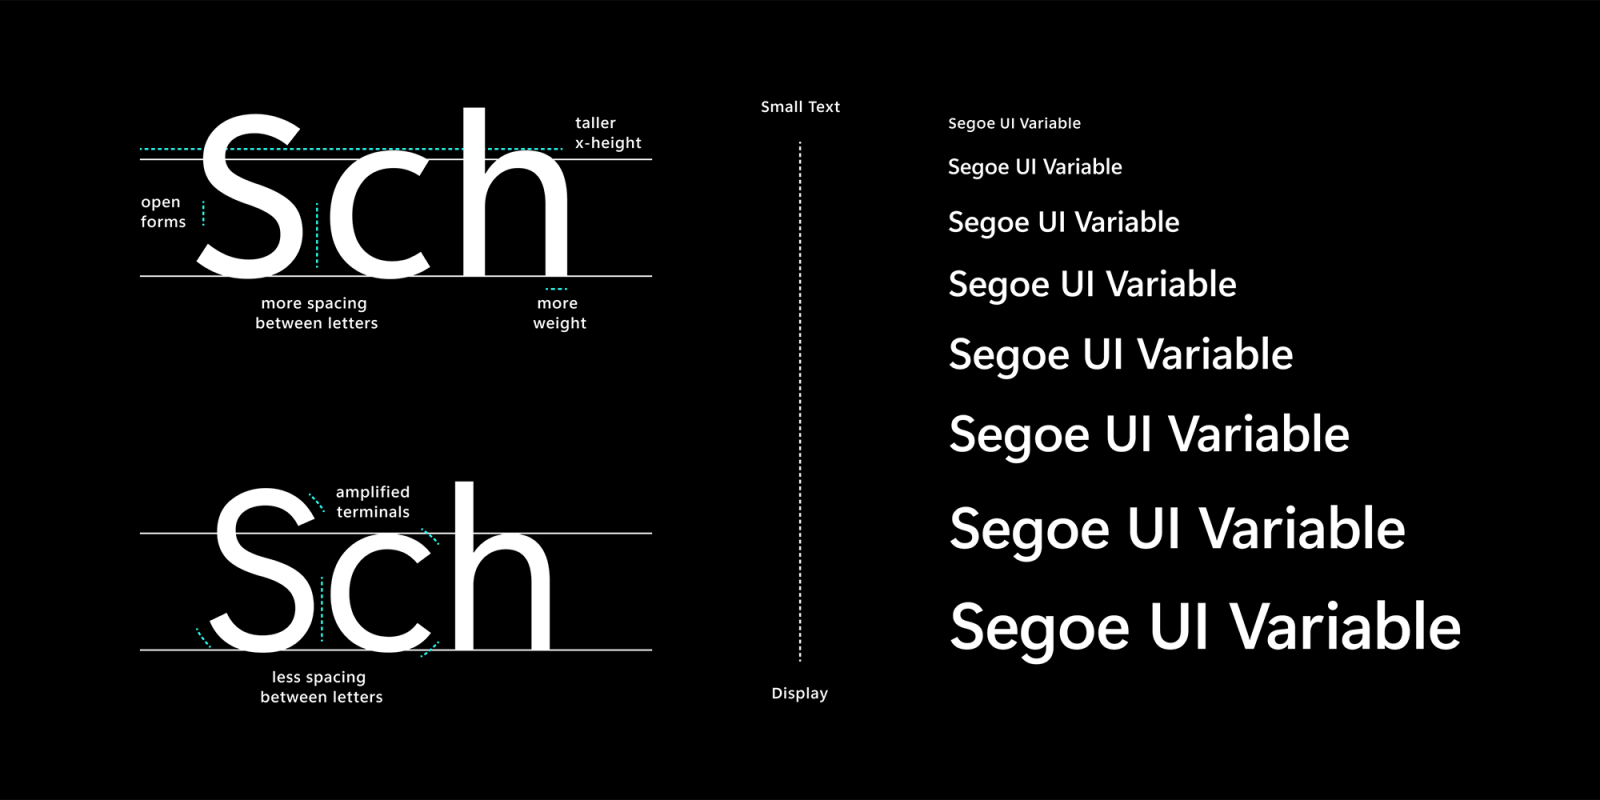 New Segoe UI Variable font